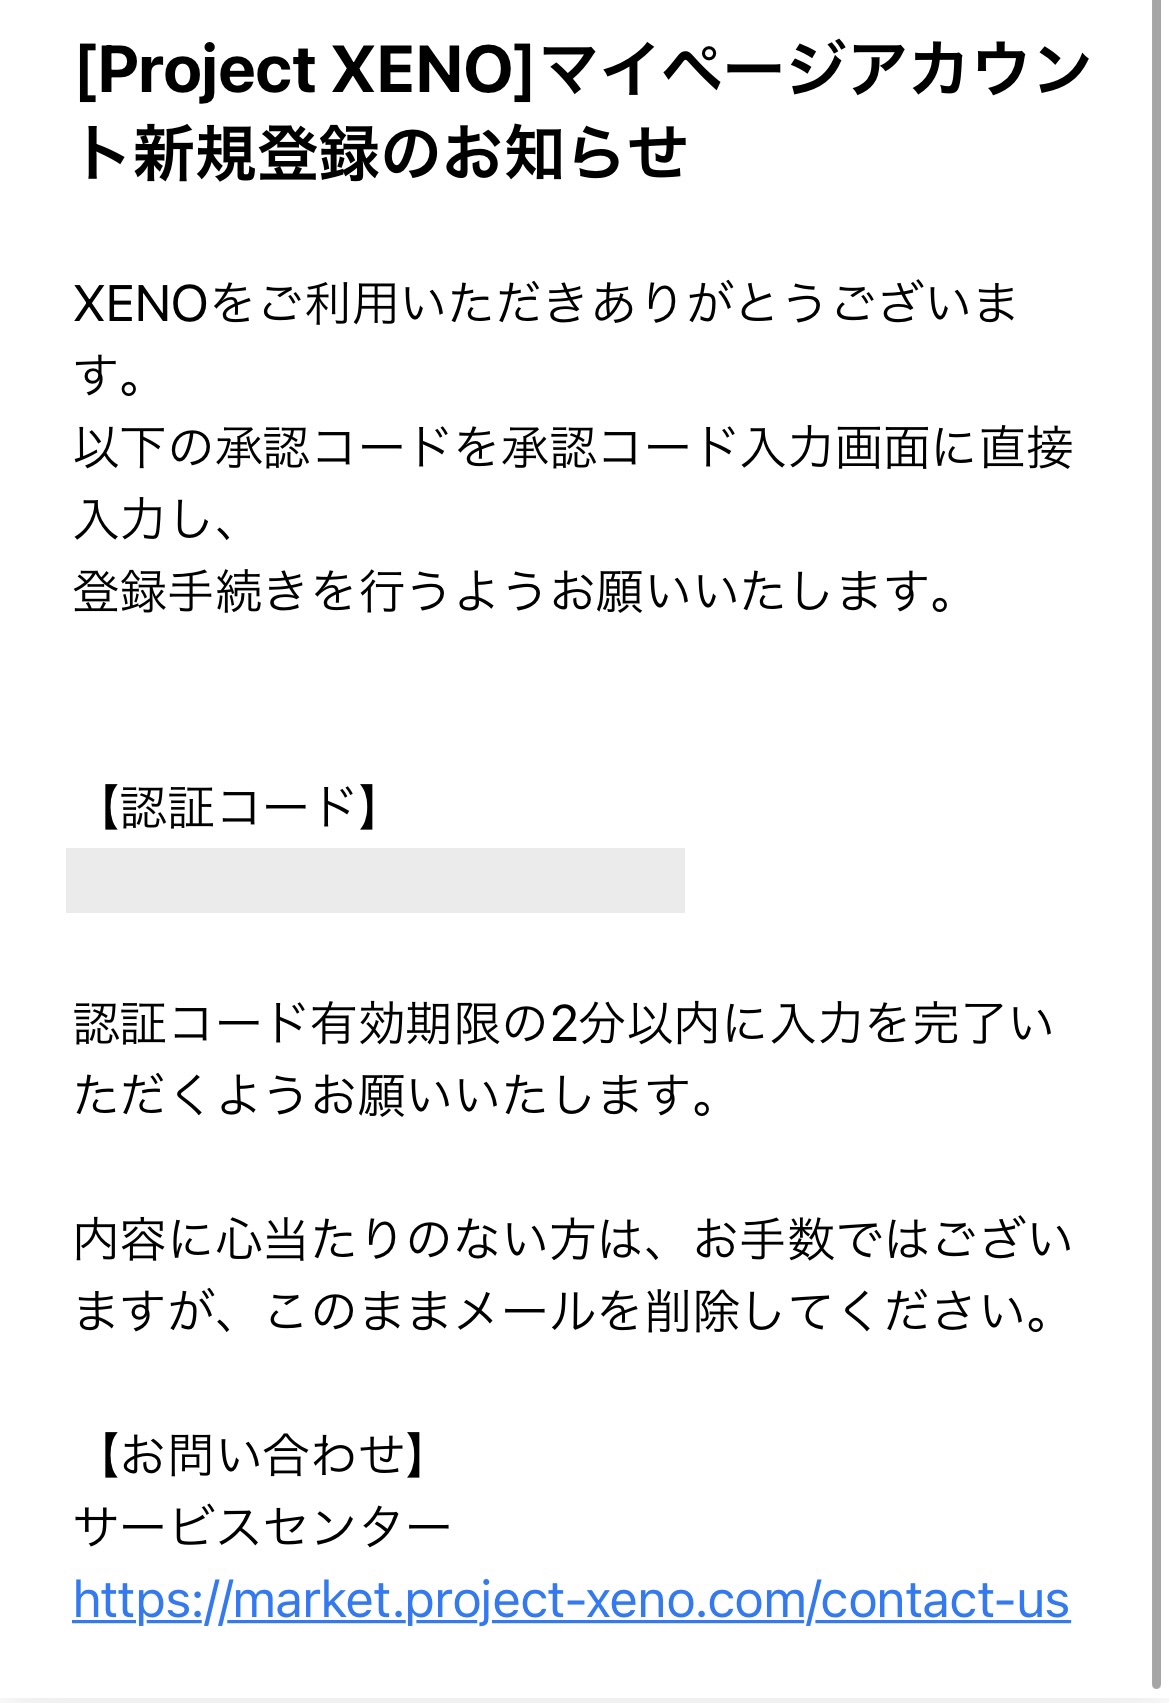 【PROJEXT XENO】メールアドレスでマイページ登録